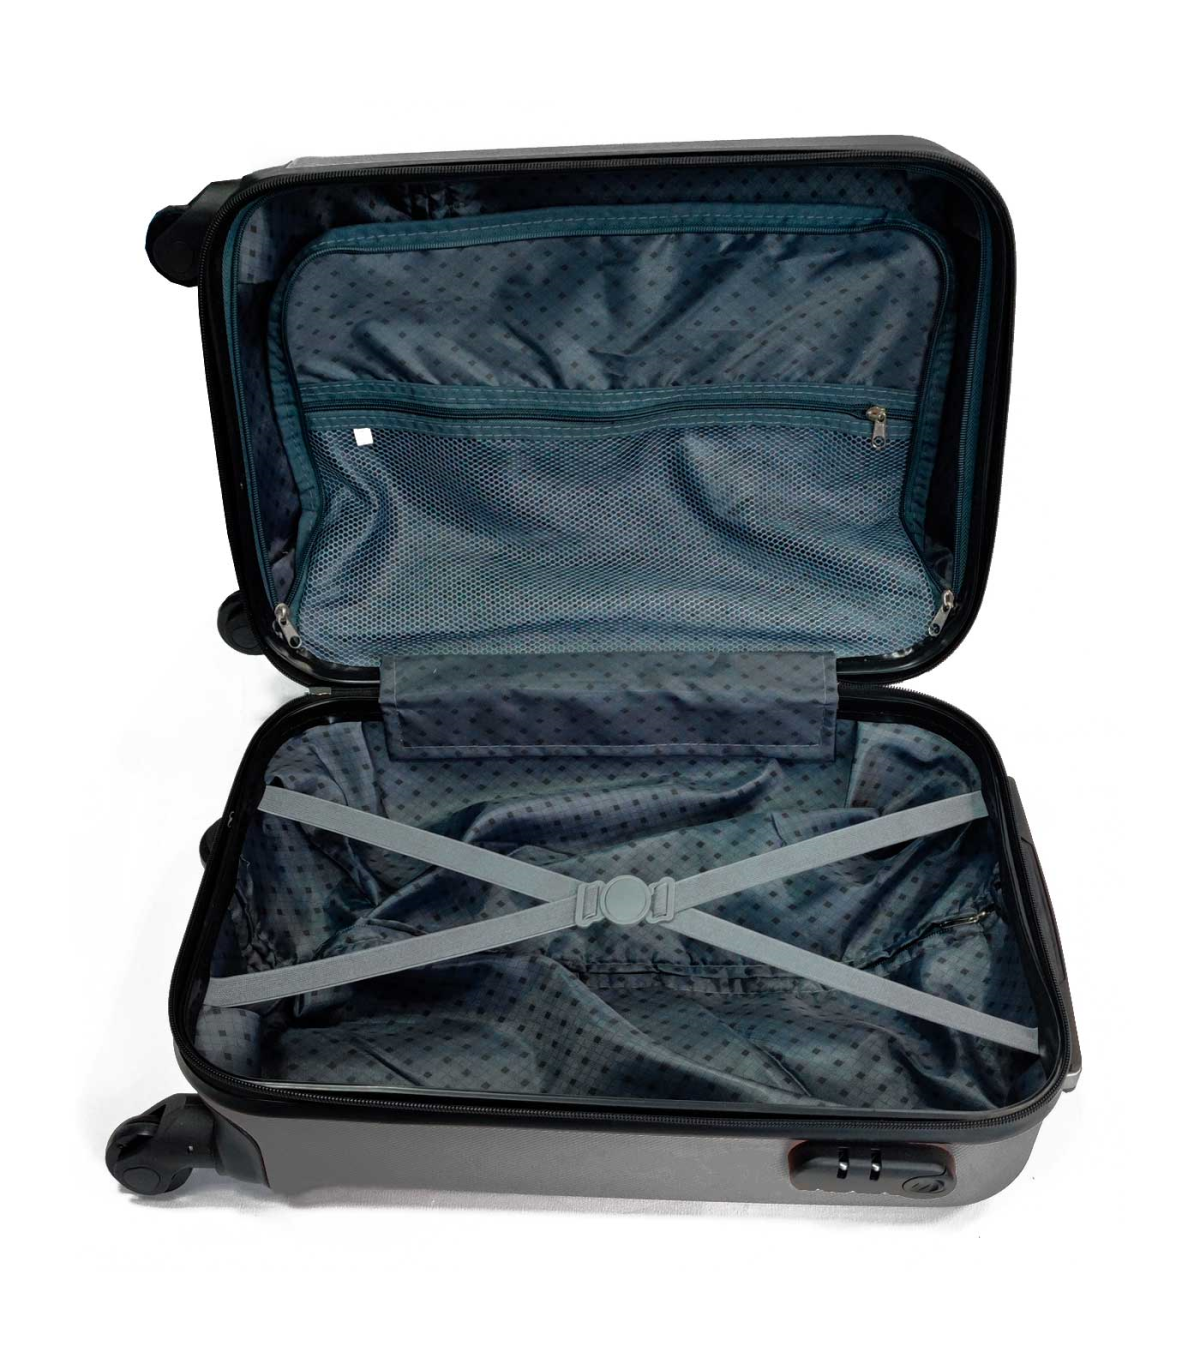  Maleta ligera de 4 ruedas para equipaje, equipaje de mano,  equipaje de viaje, aprobado (color: azul, tamaño: 24.0 in). : Ropa, Zapatos  y Joyería